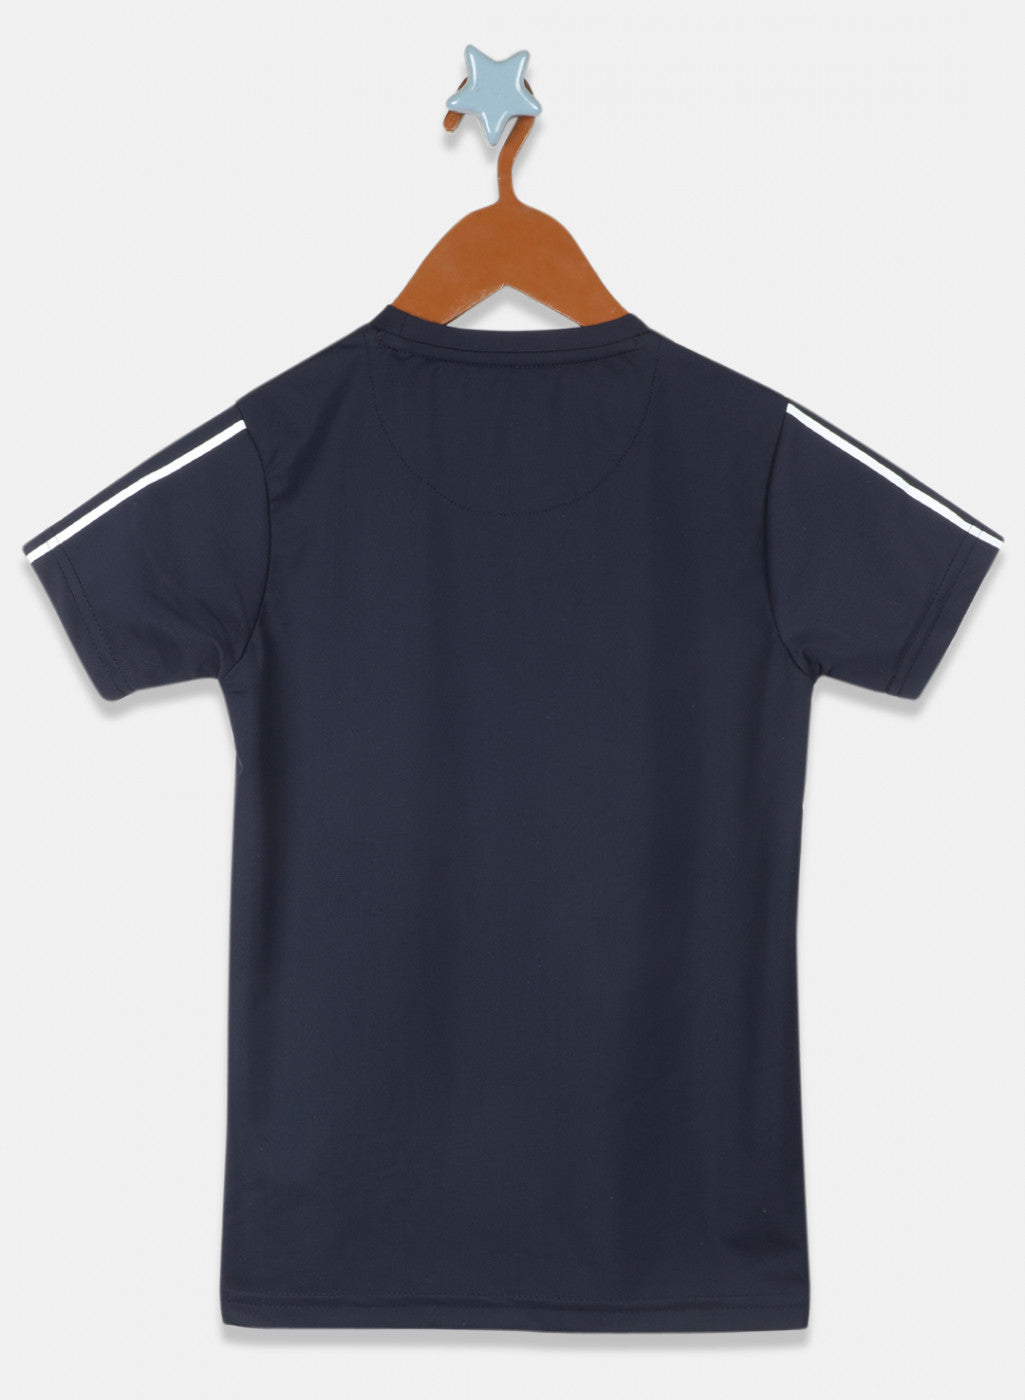 Boys Navy Blue Printed T-Shirt